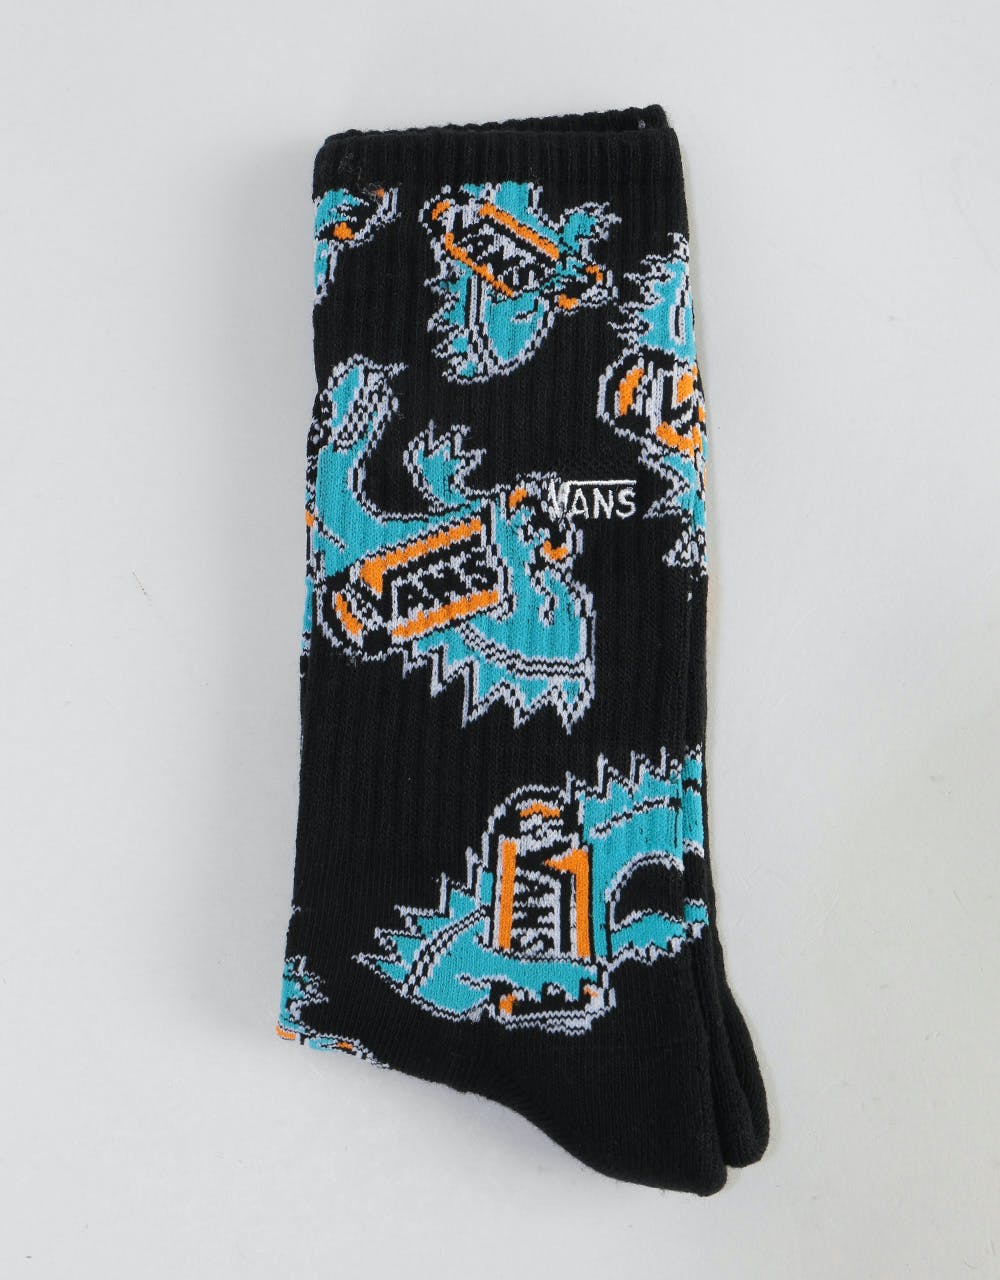 Vans Vansosaur Crew Socks - Black